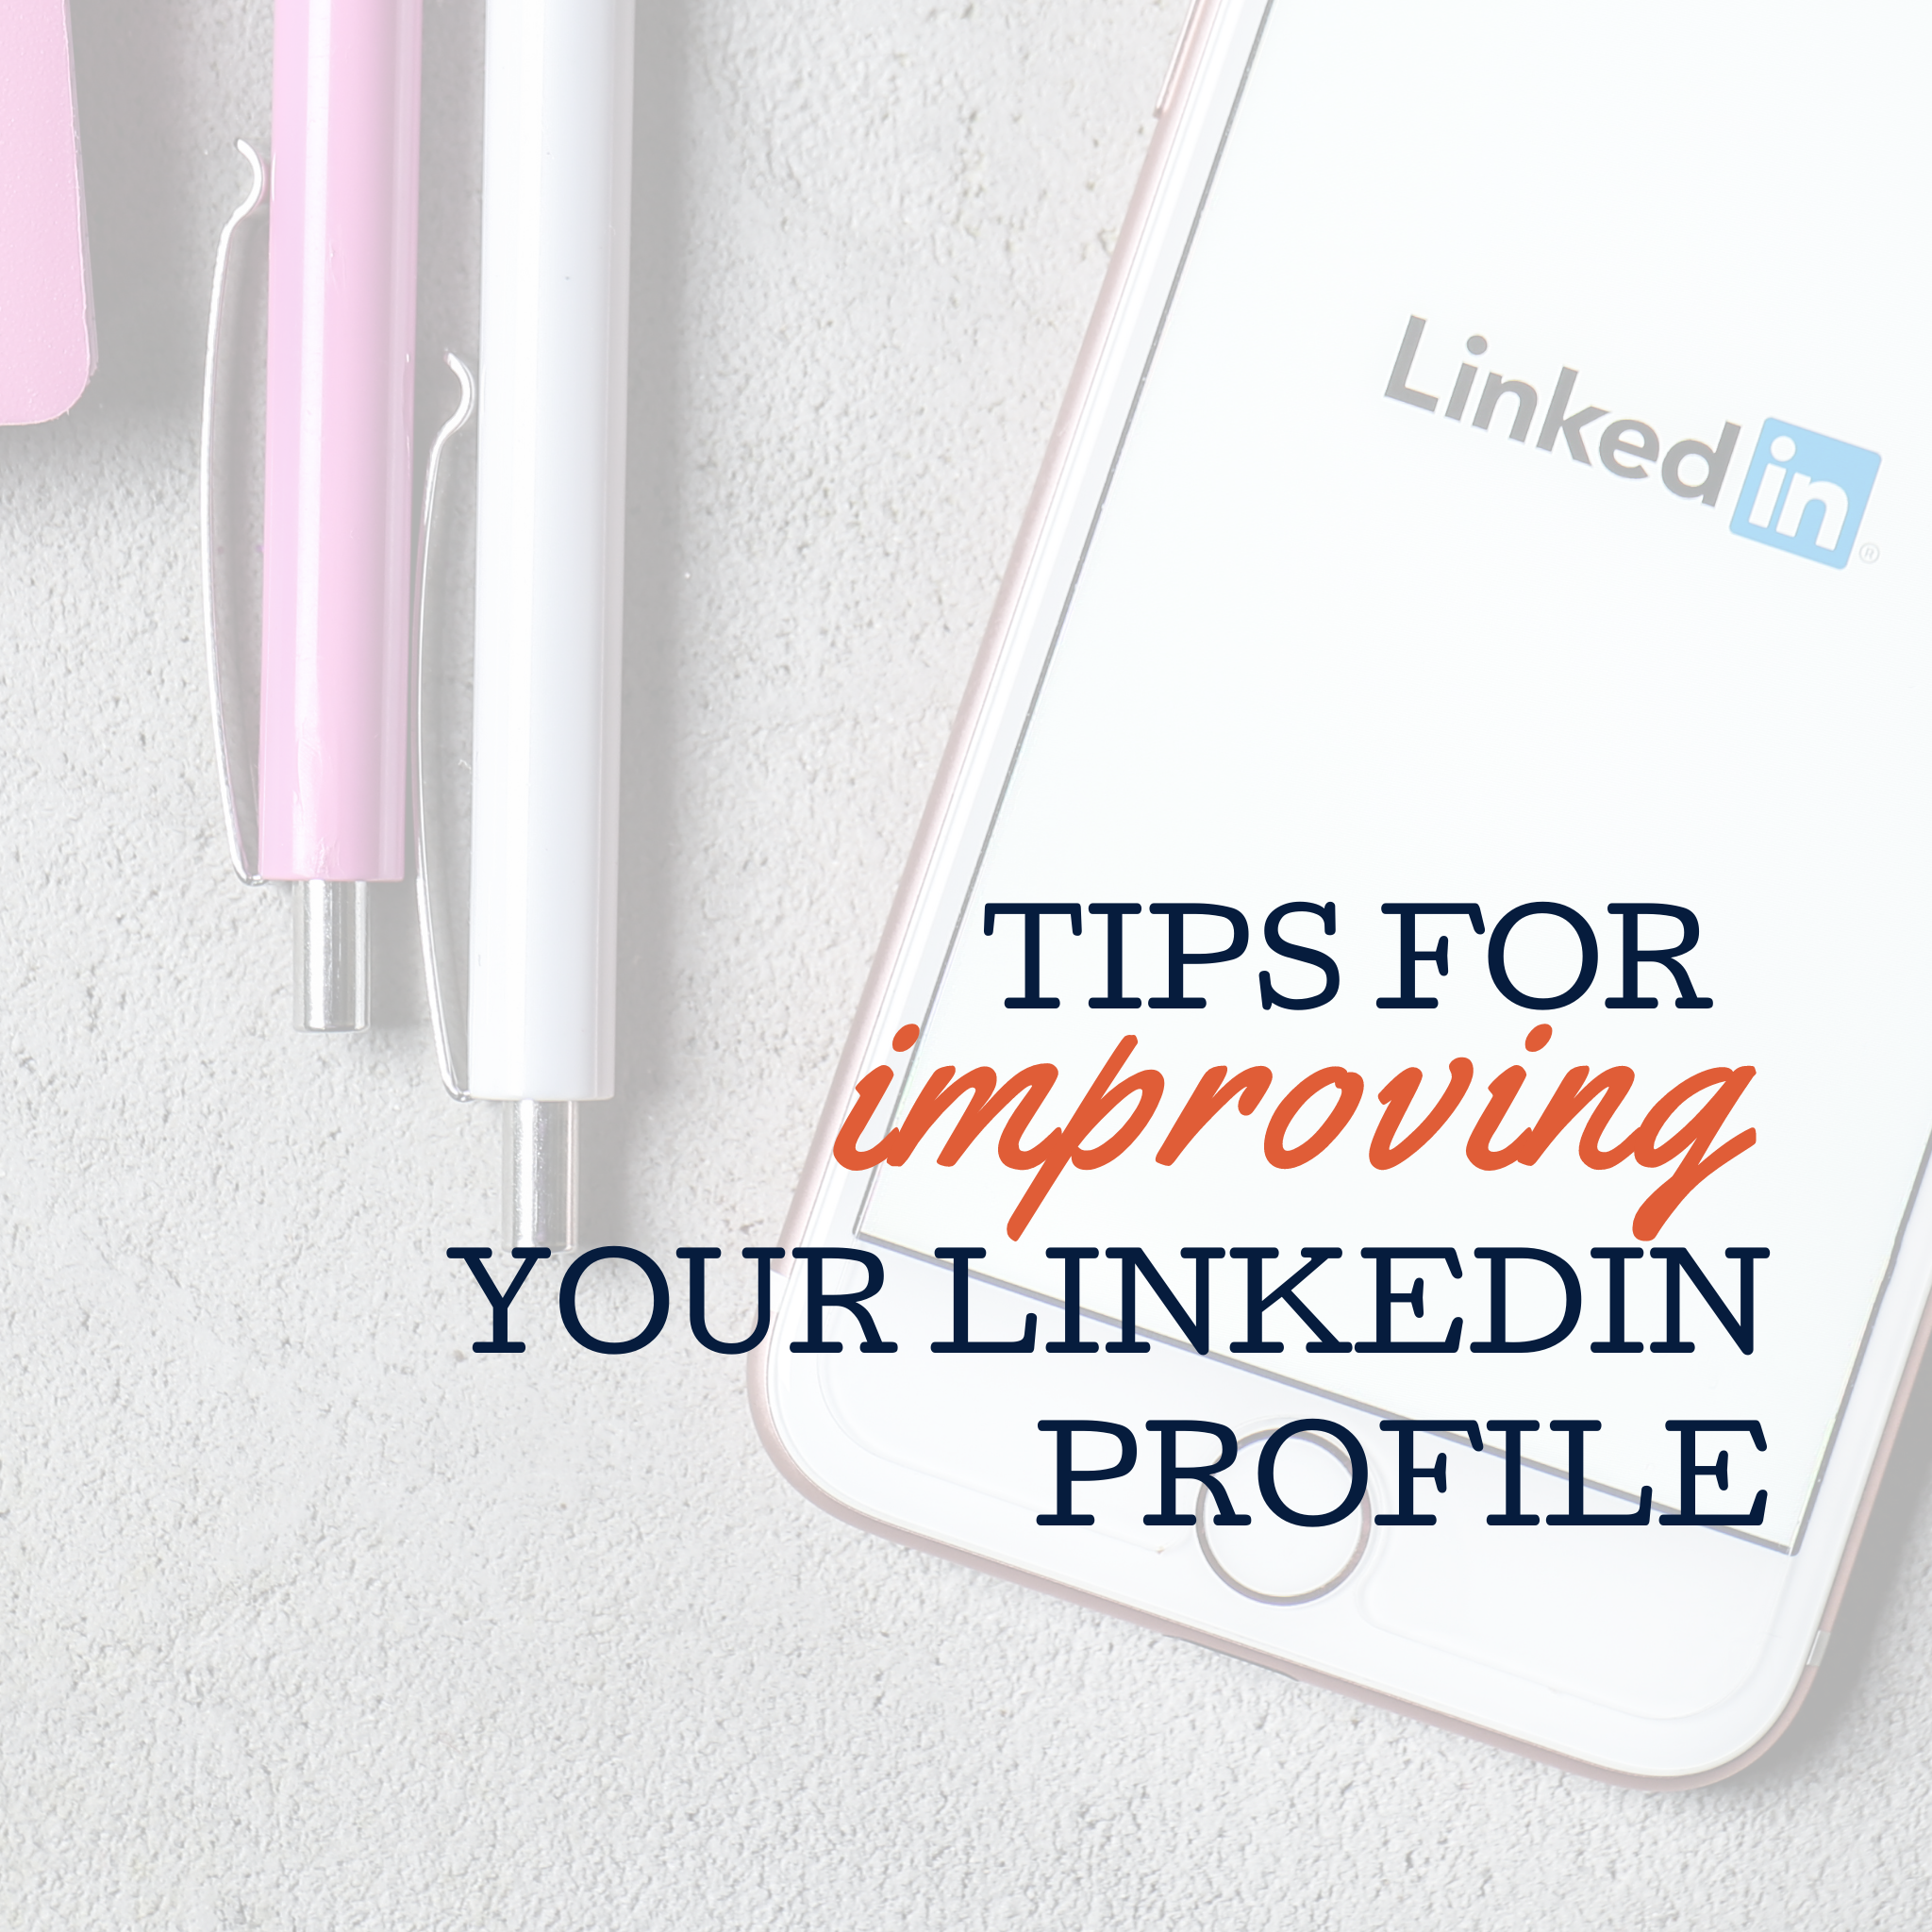 Tips for improving LinkedIn